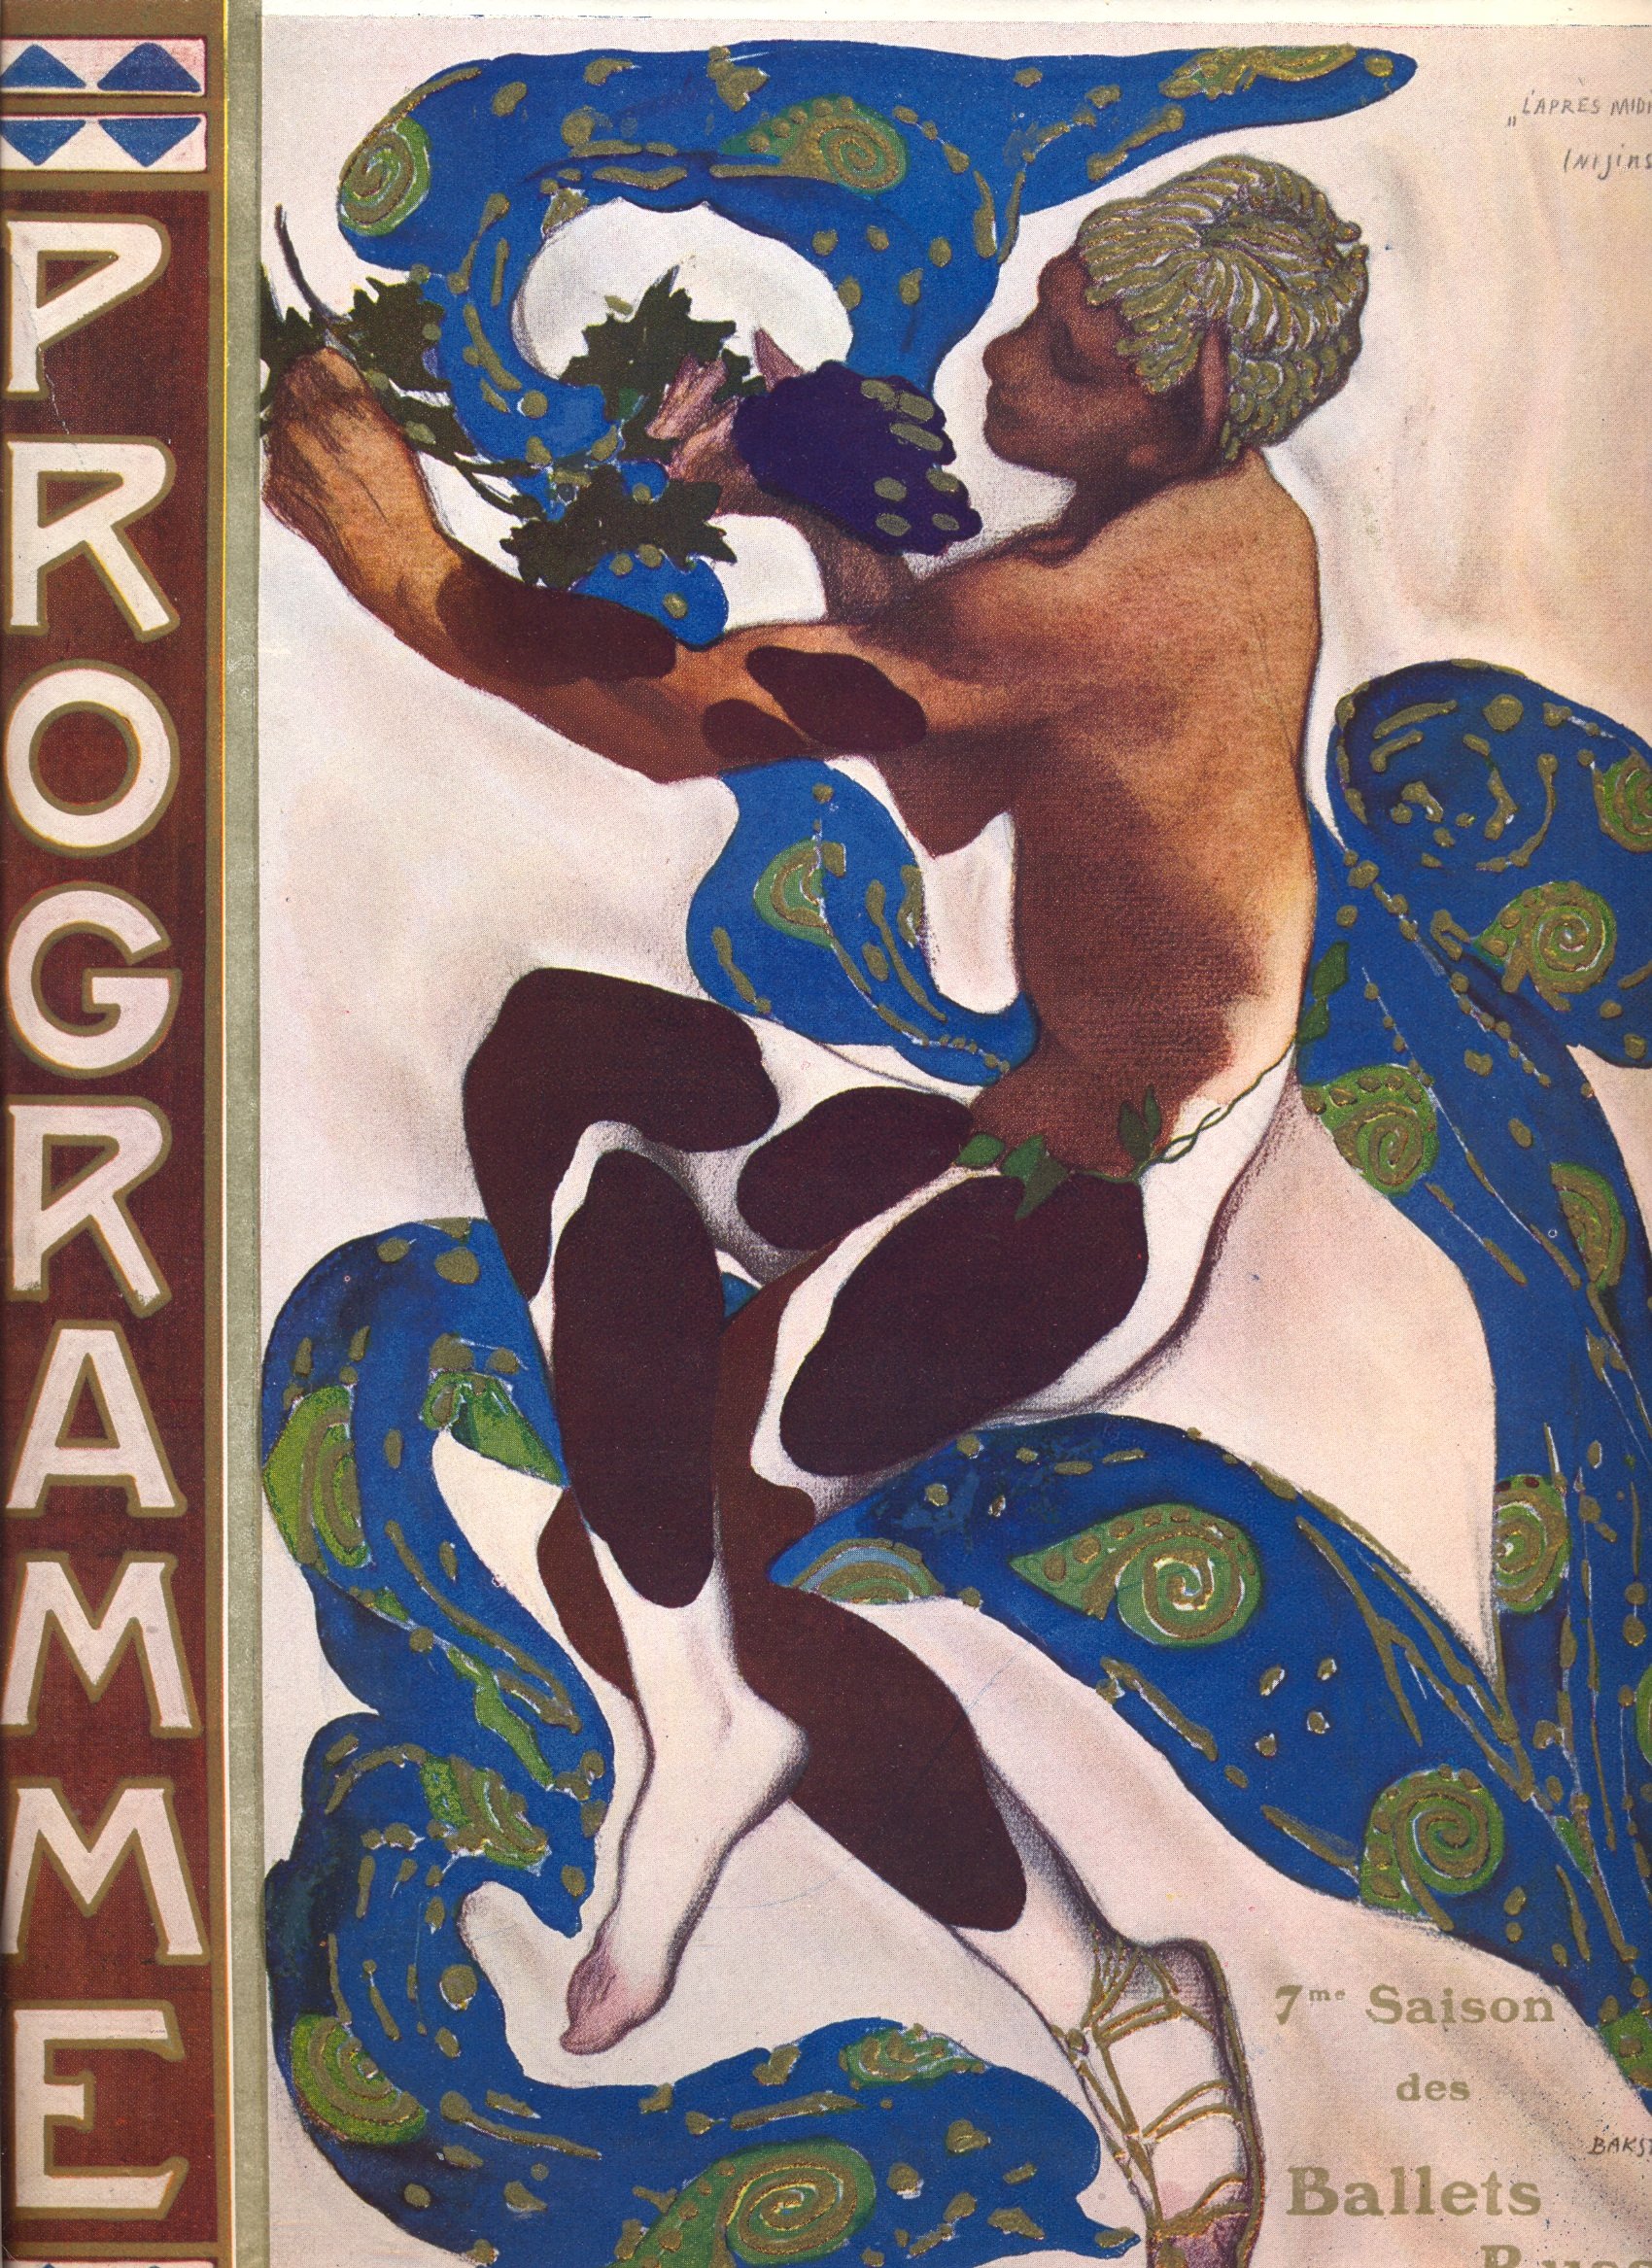 Cover design of Nijinsky's faun costume in L'après midi d'un Faune by Claude Debussy, 1912